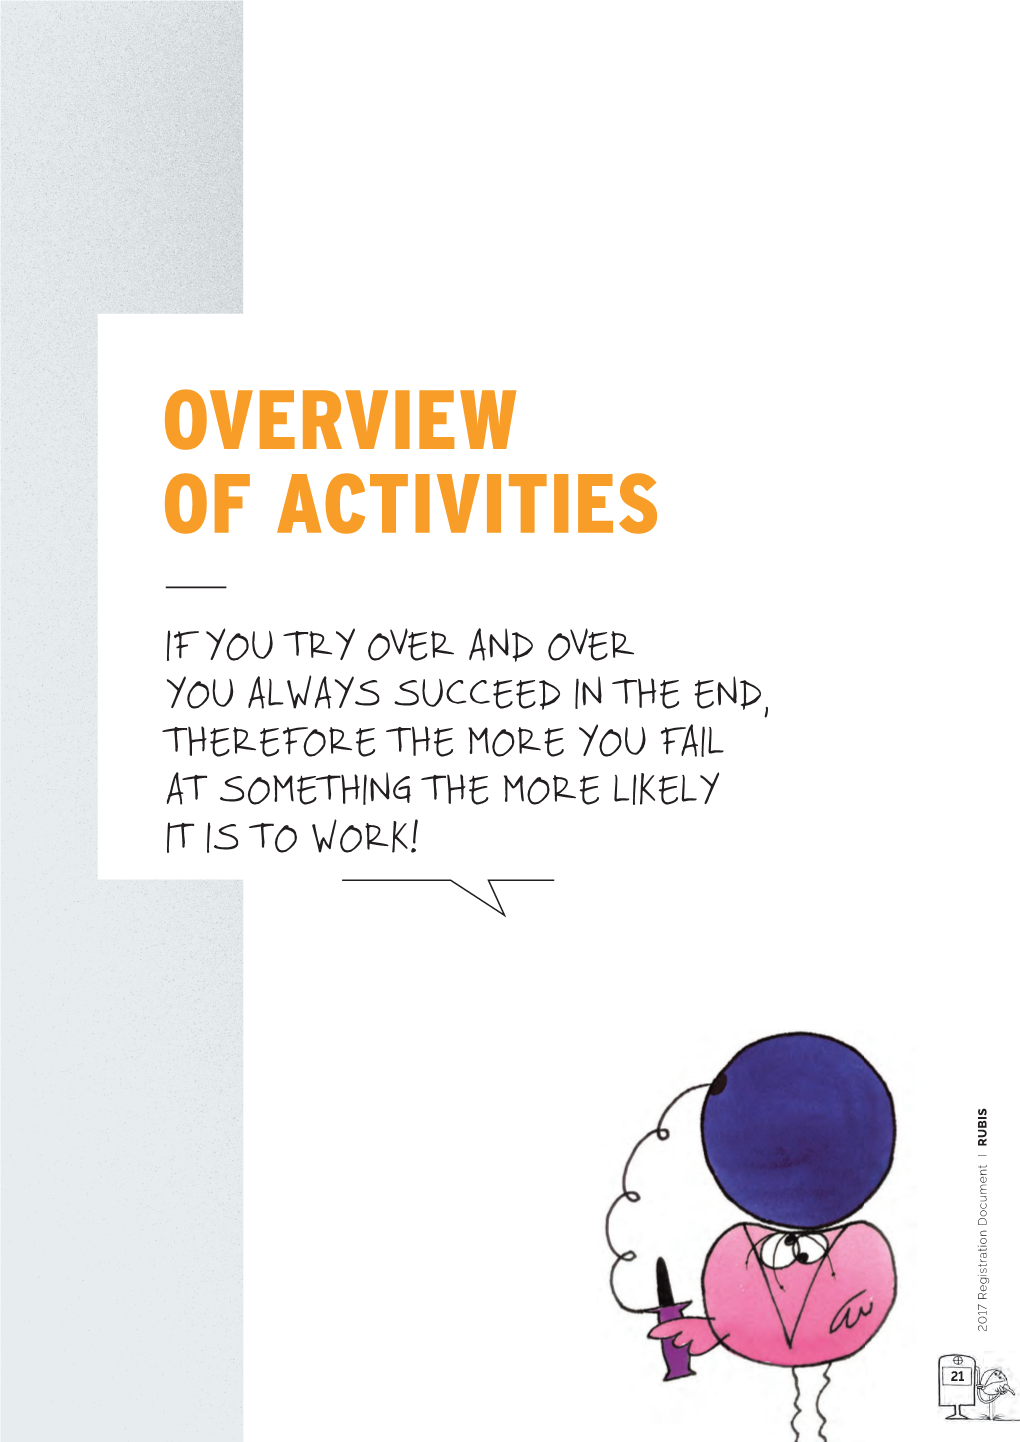 Overview of Activities